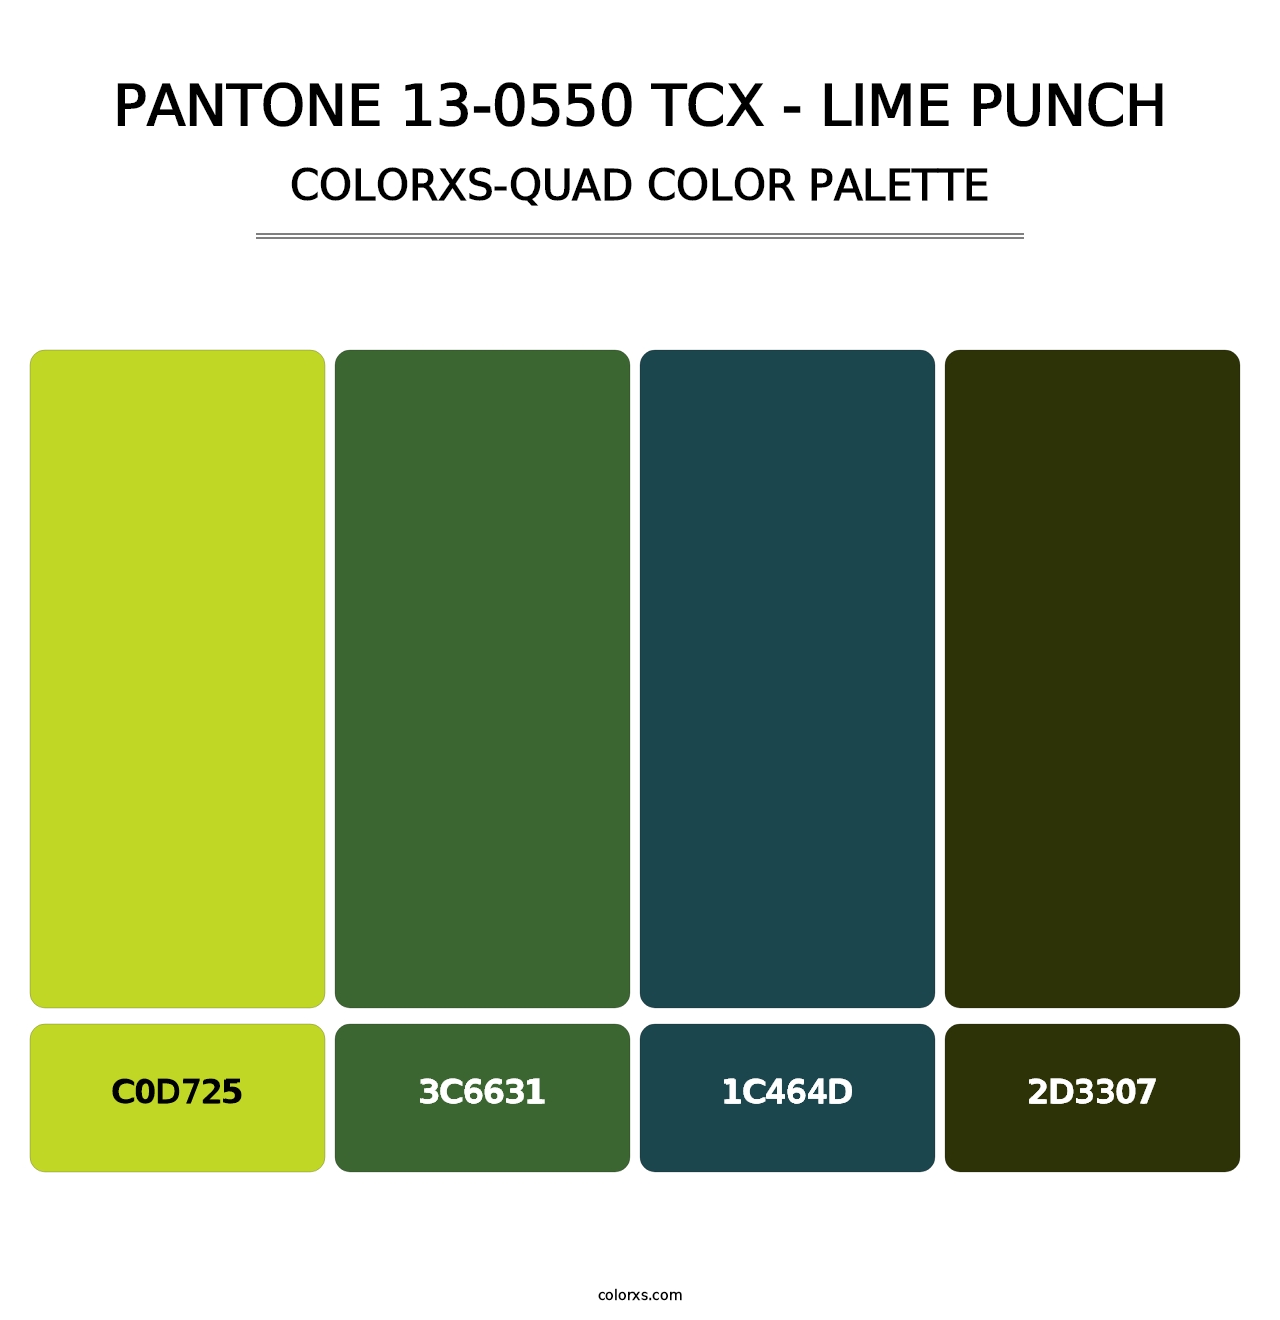 PANTONE 13-0550 TCX - Lime Punch - Colorxs Quad Palette